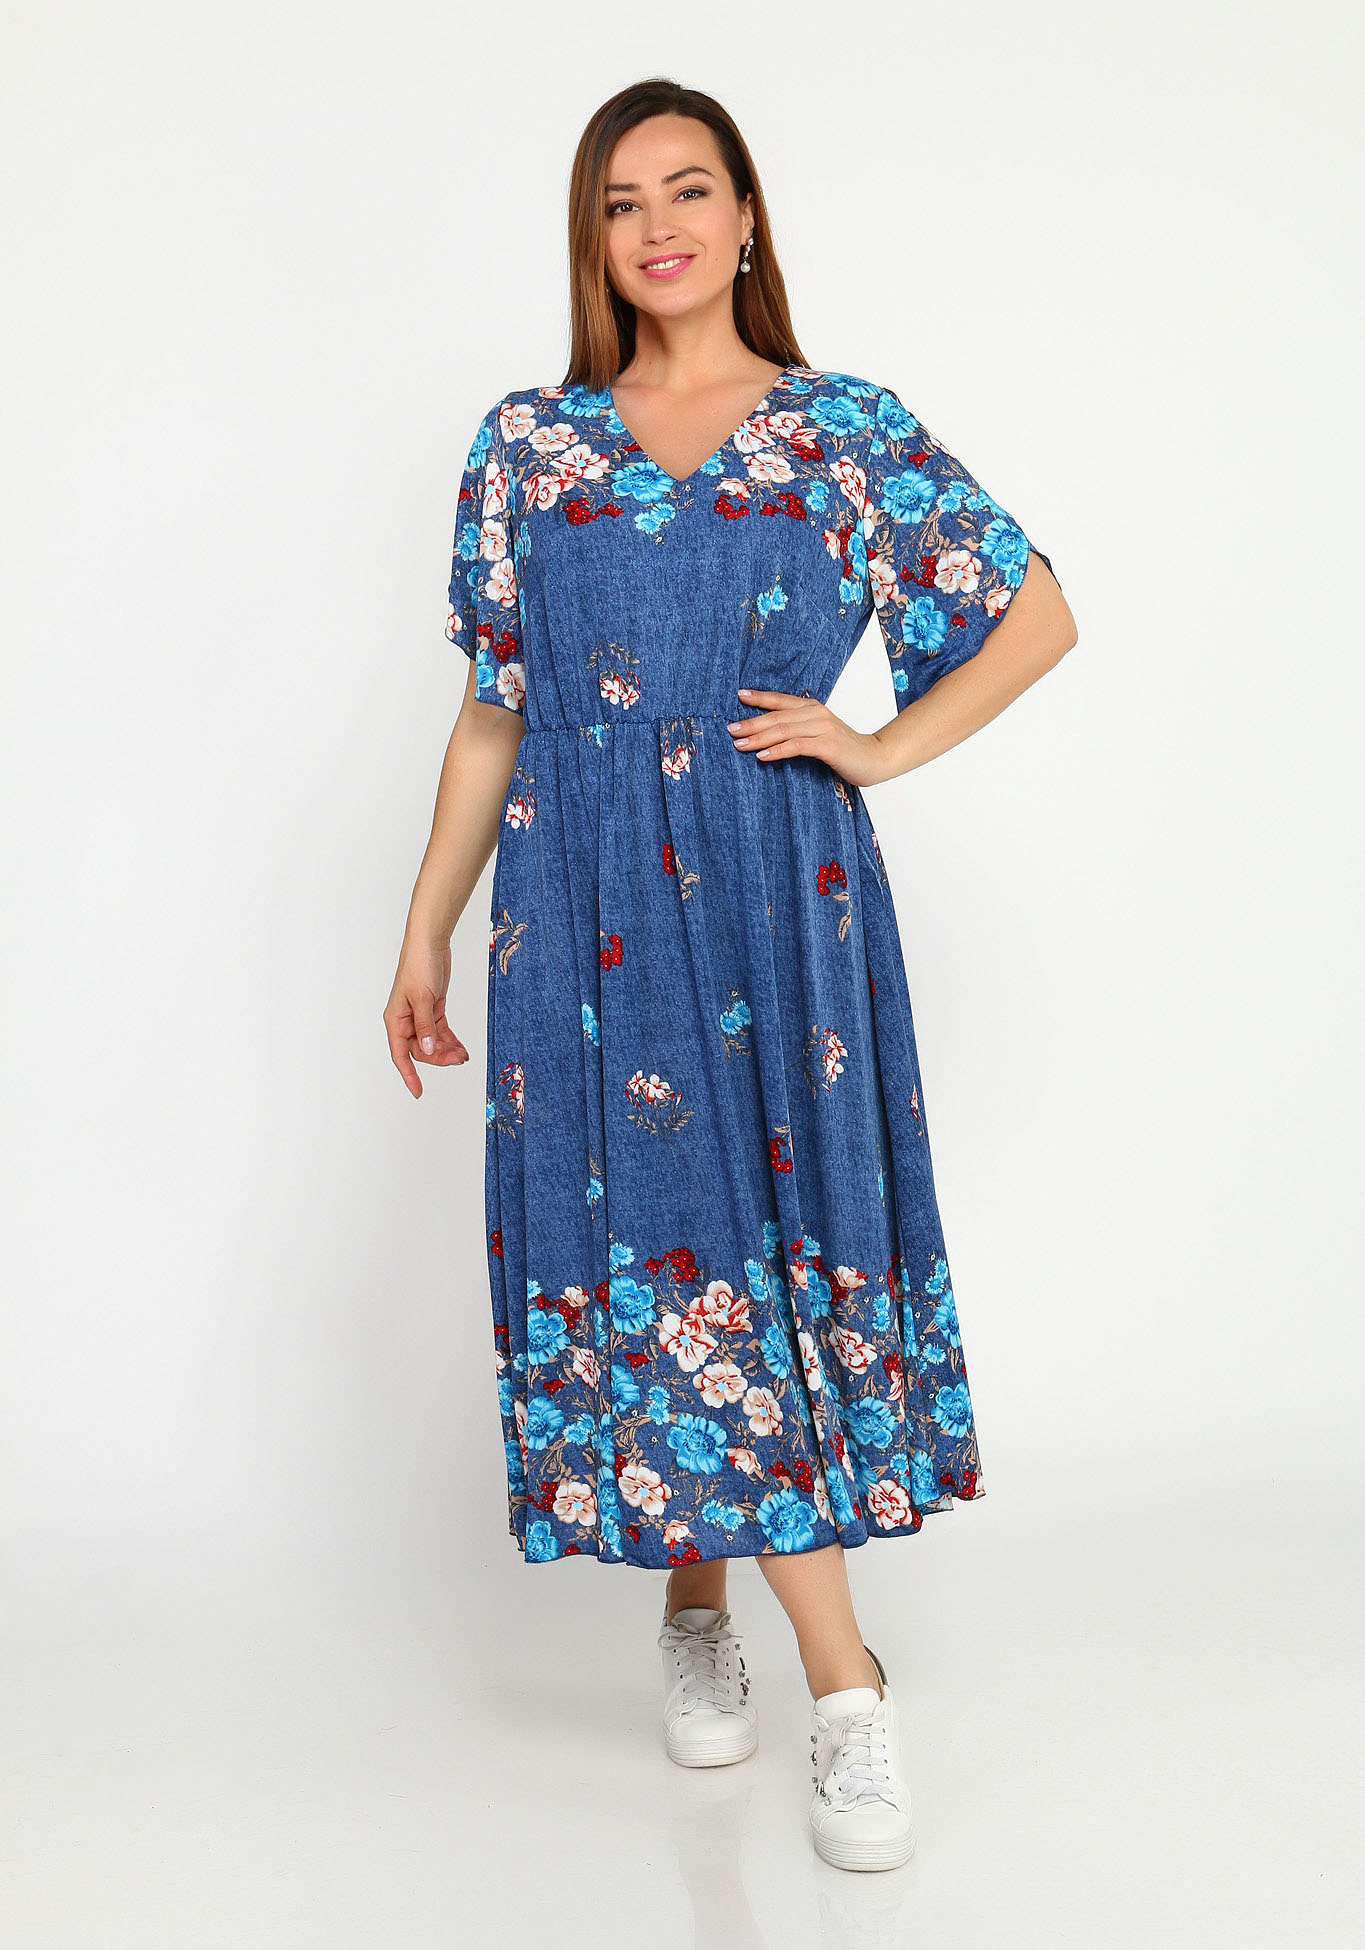 Платье с резинкой на талии и купонным принтом Bianka Modeno, размер 48, цвет голубые цветы - фото 2